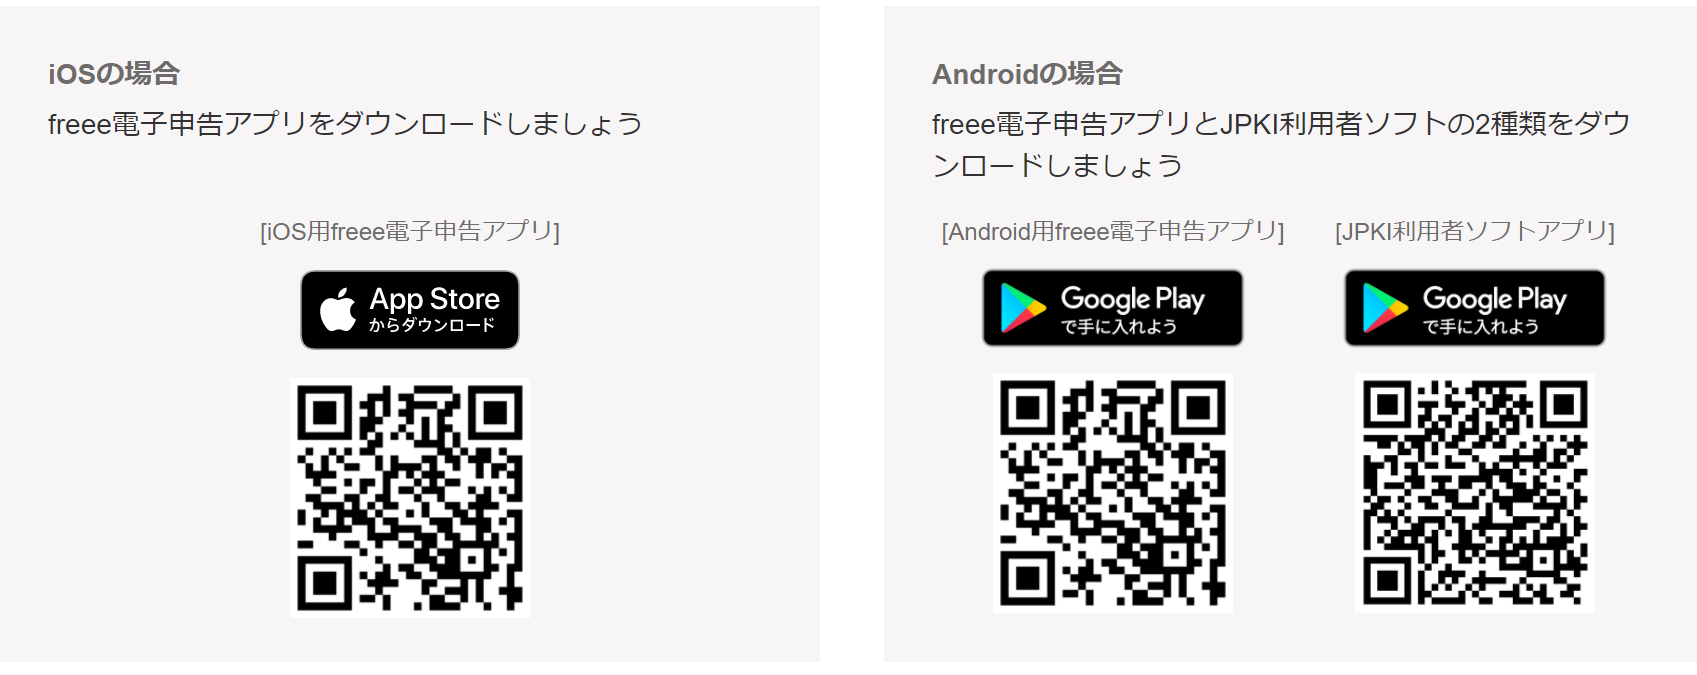 iOS / Android版それぞれのアプリをダウンロードするためのQRコード3つが表示されている画像。画像の左半分にiOS版のアプリをインストールするためのQRコードが1つ、画像の右半分にAndroid版のアプリをインストールするためのQRコードが2つ表示されている